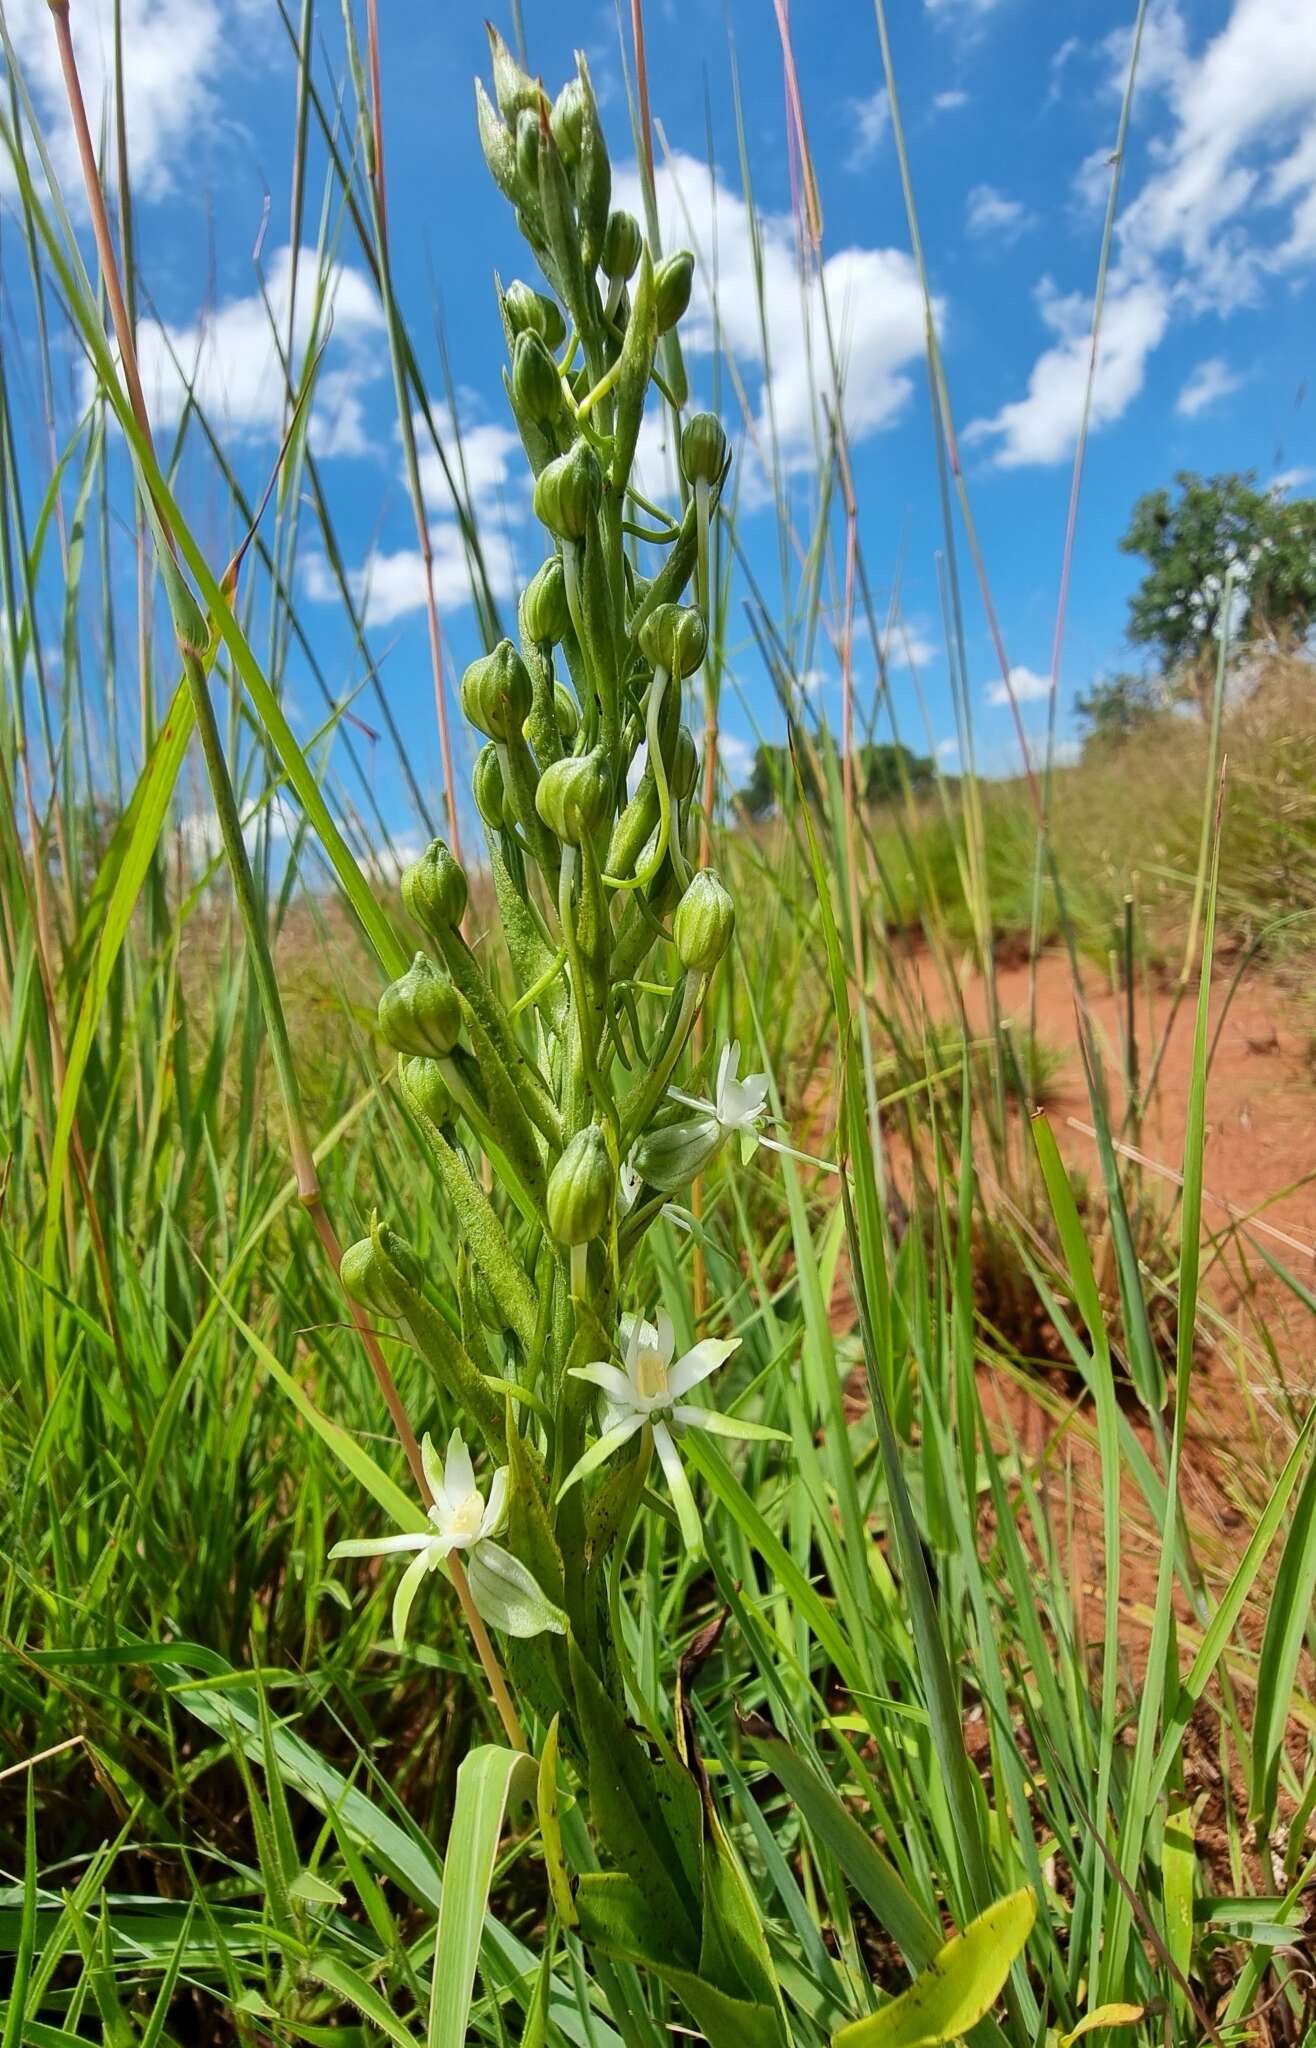 Image of Habenaria caffra Schltr.